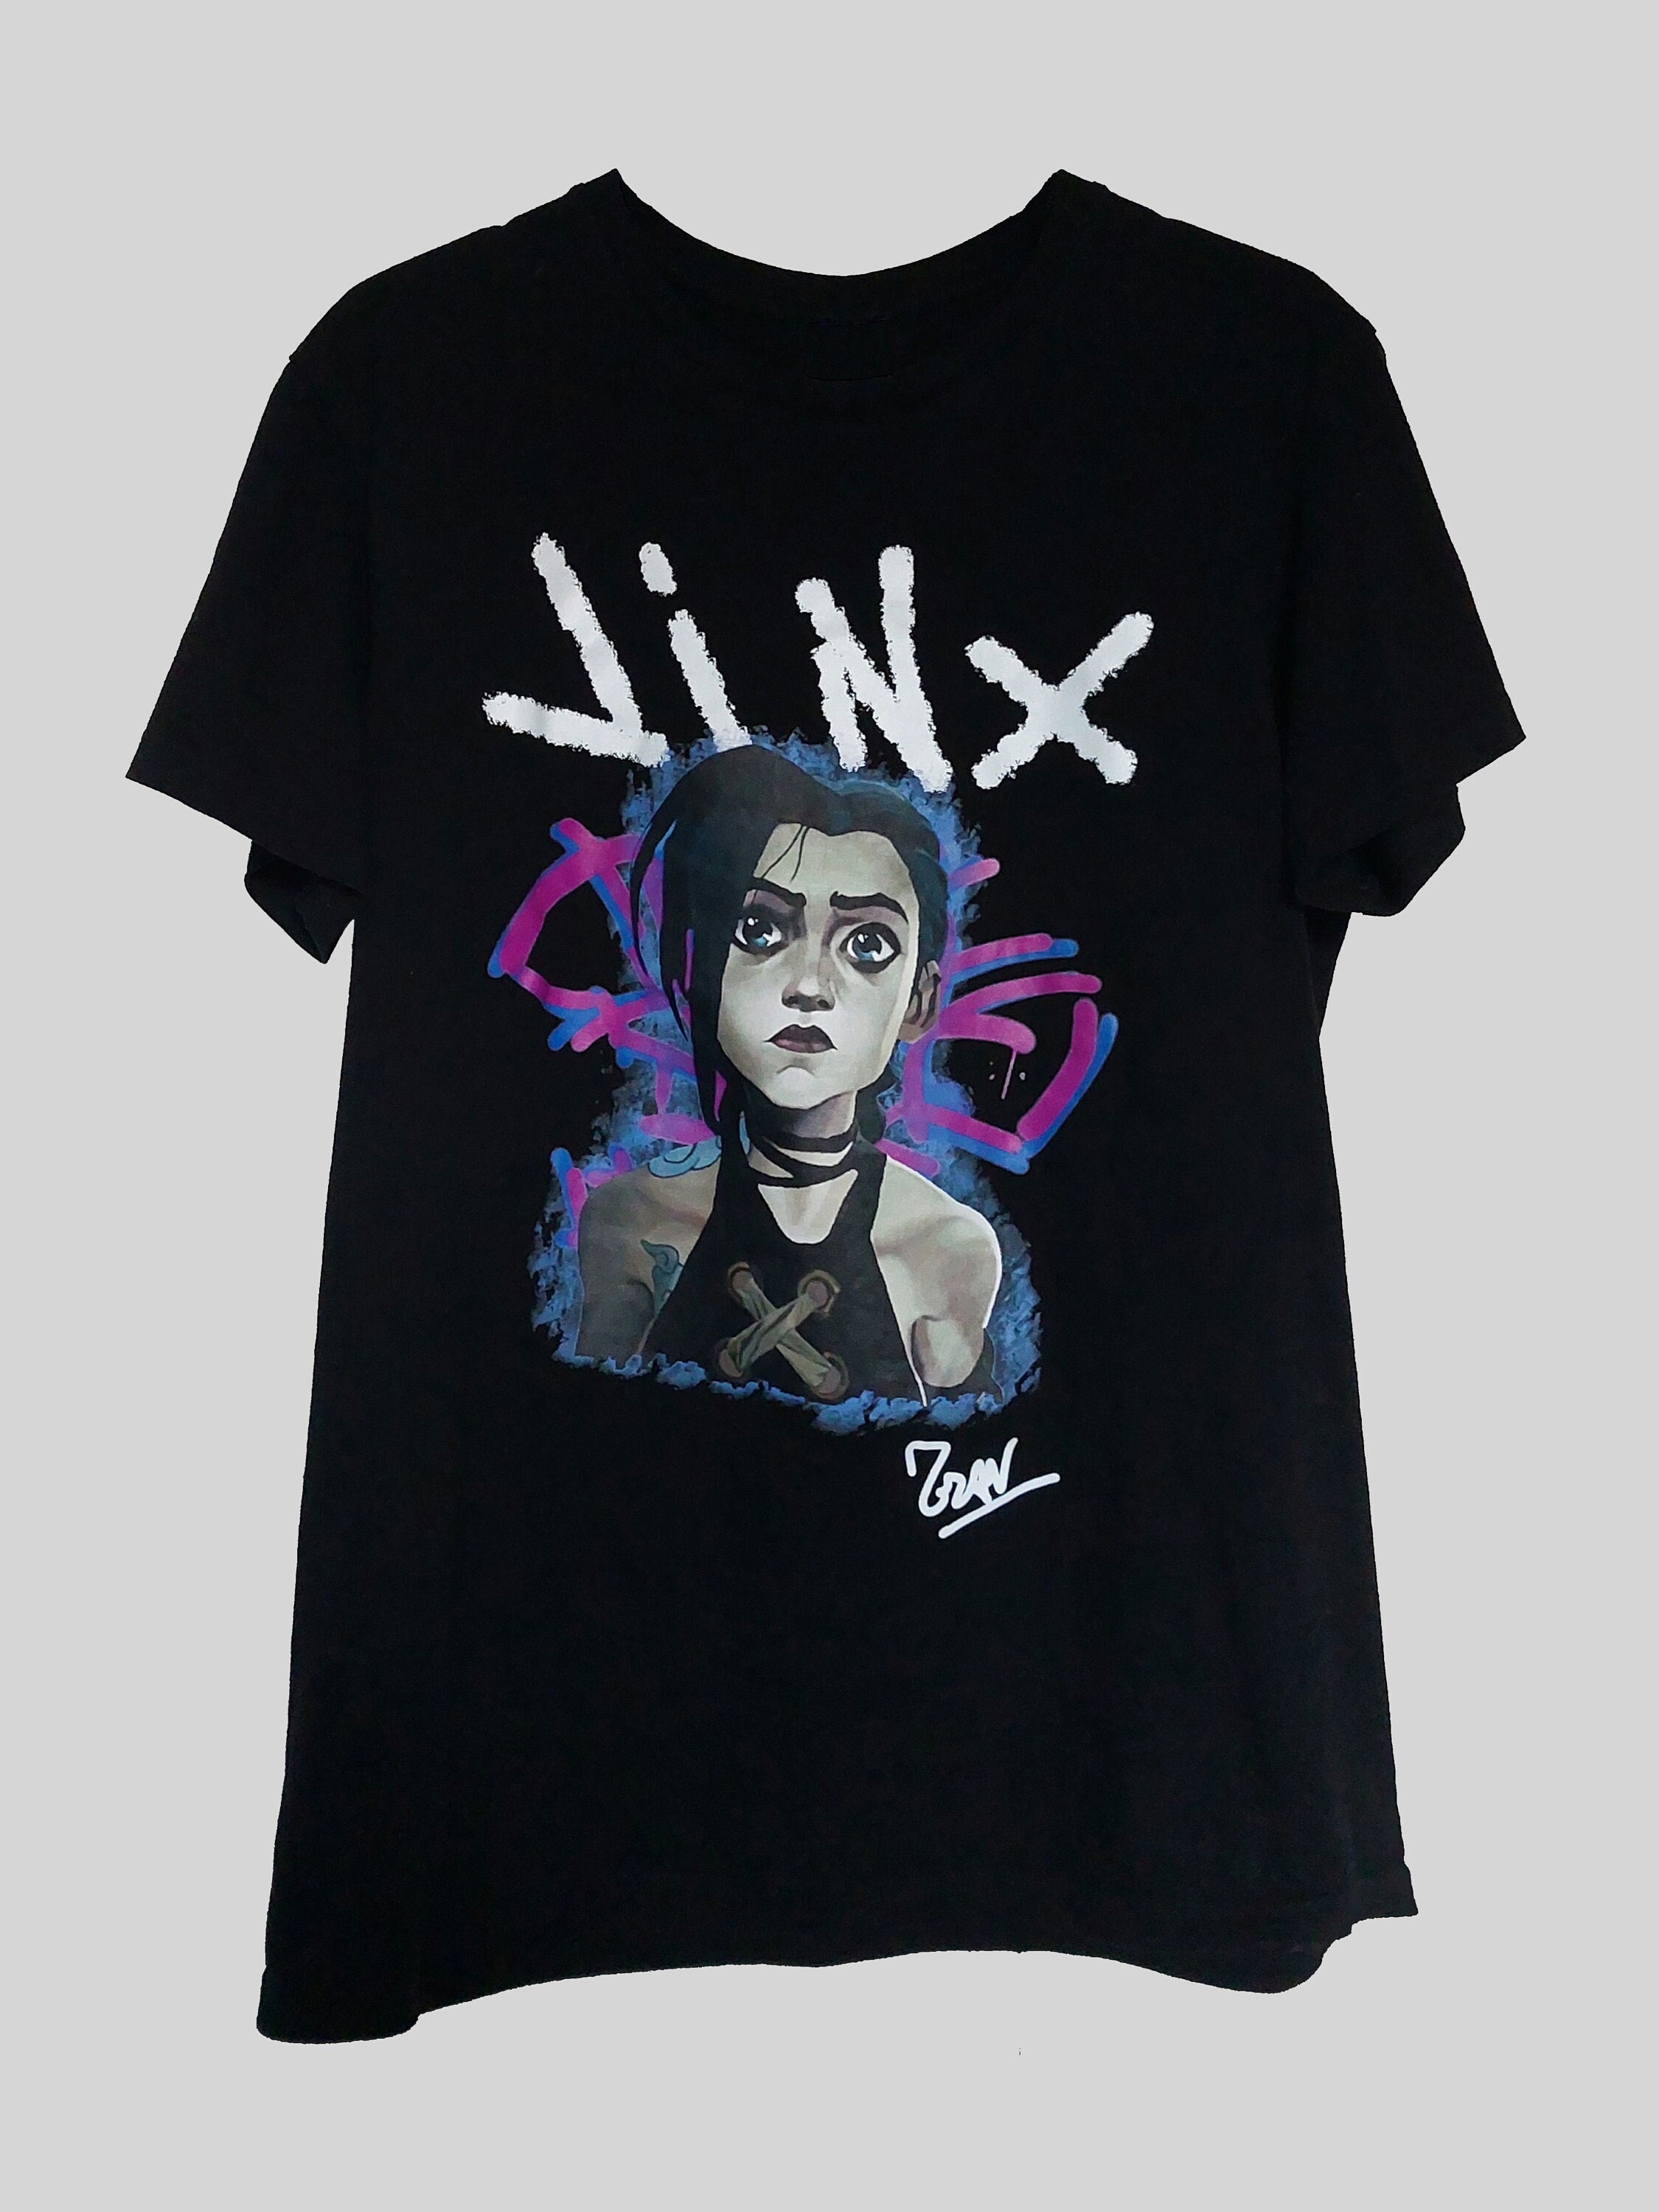 Jinx T-shirt, LOL Shirt, League of Legends Jinx Shirt, Arcane Jinx